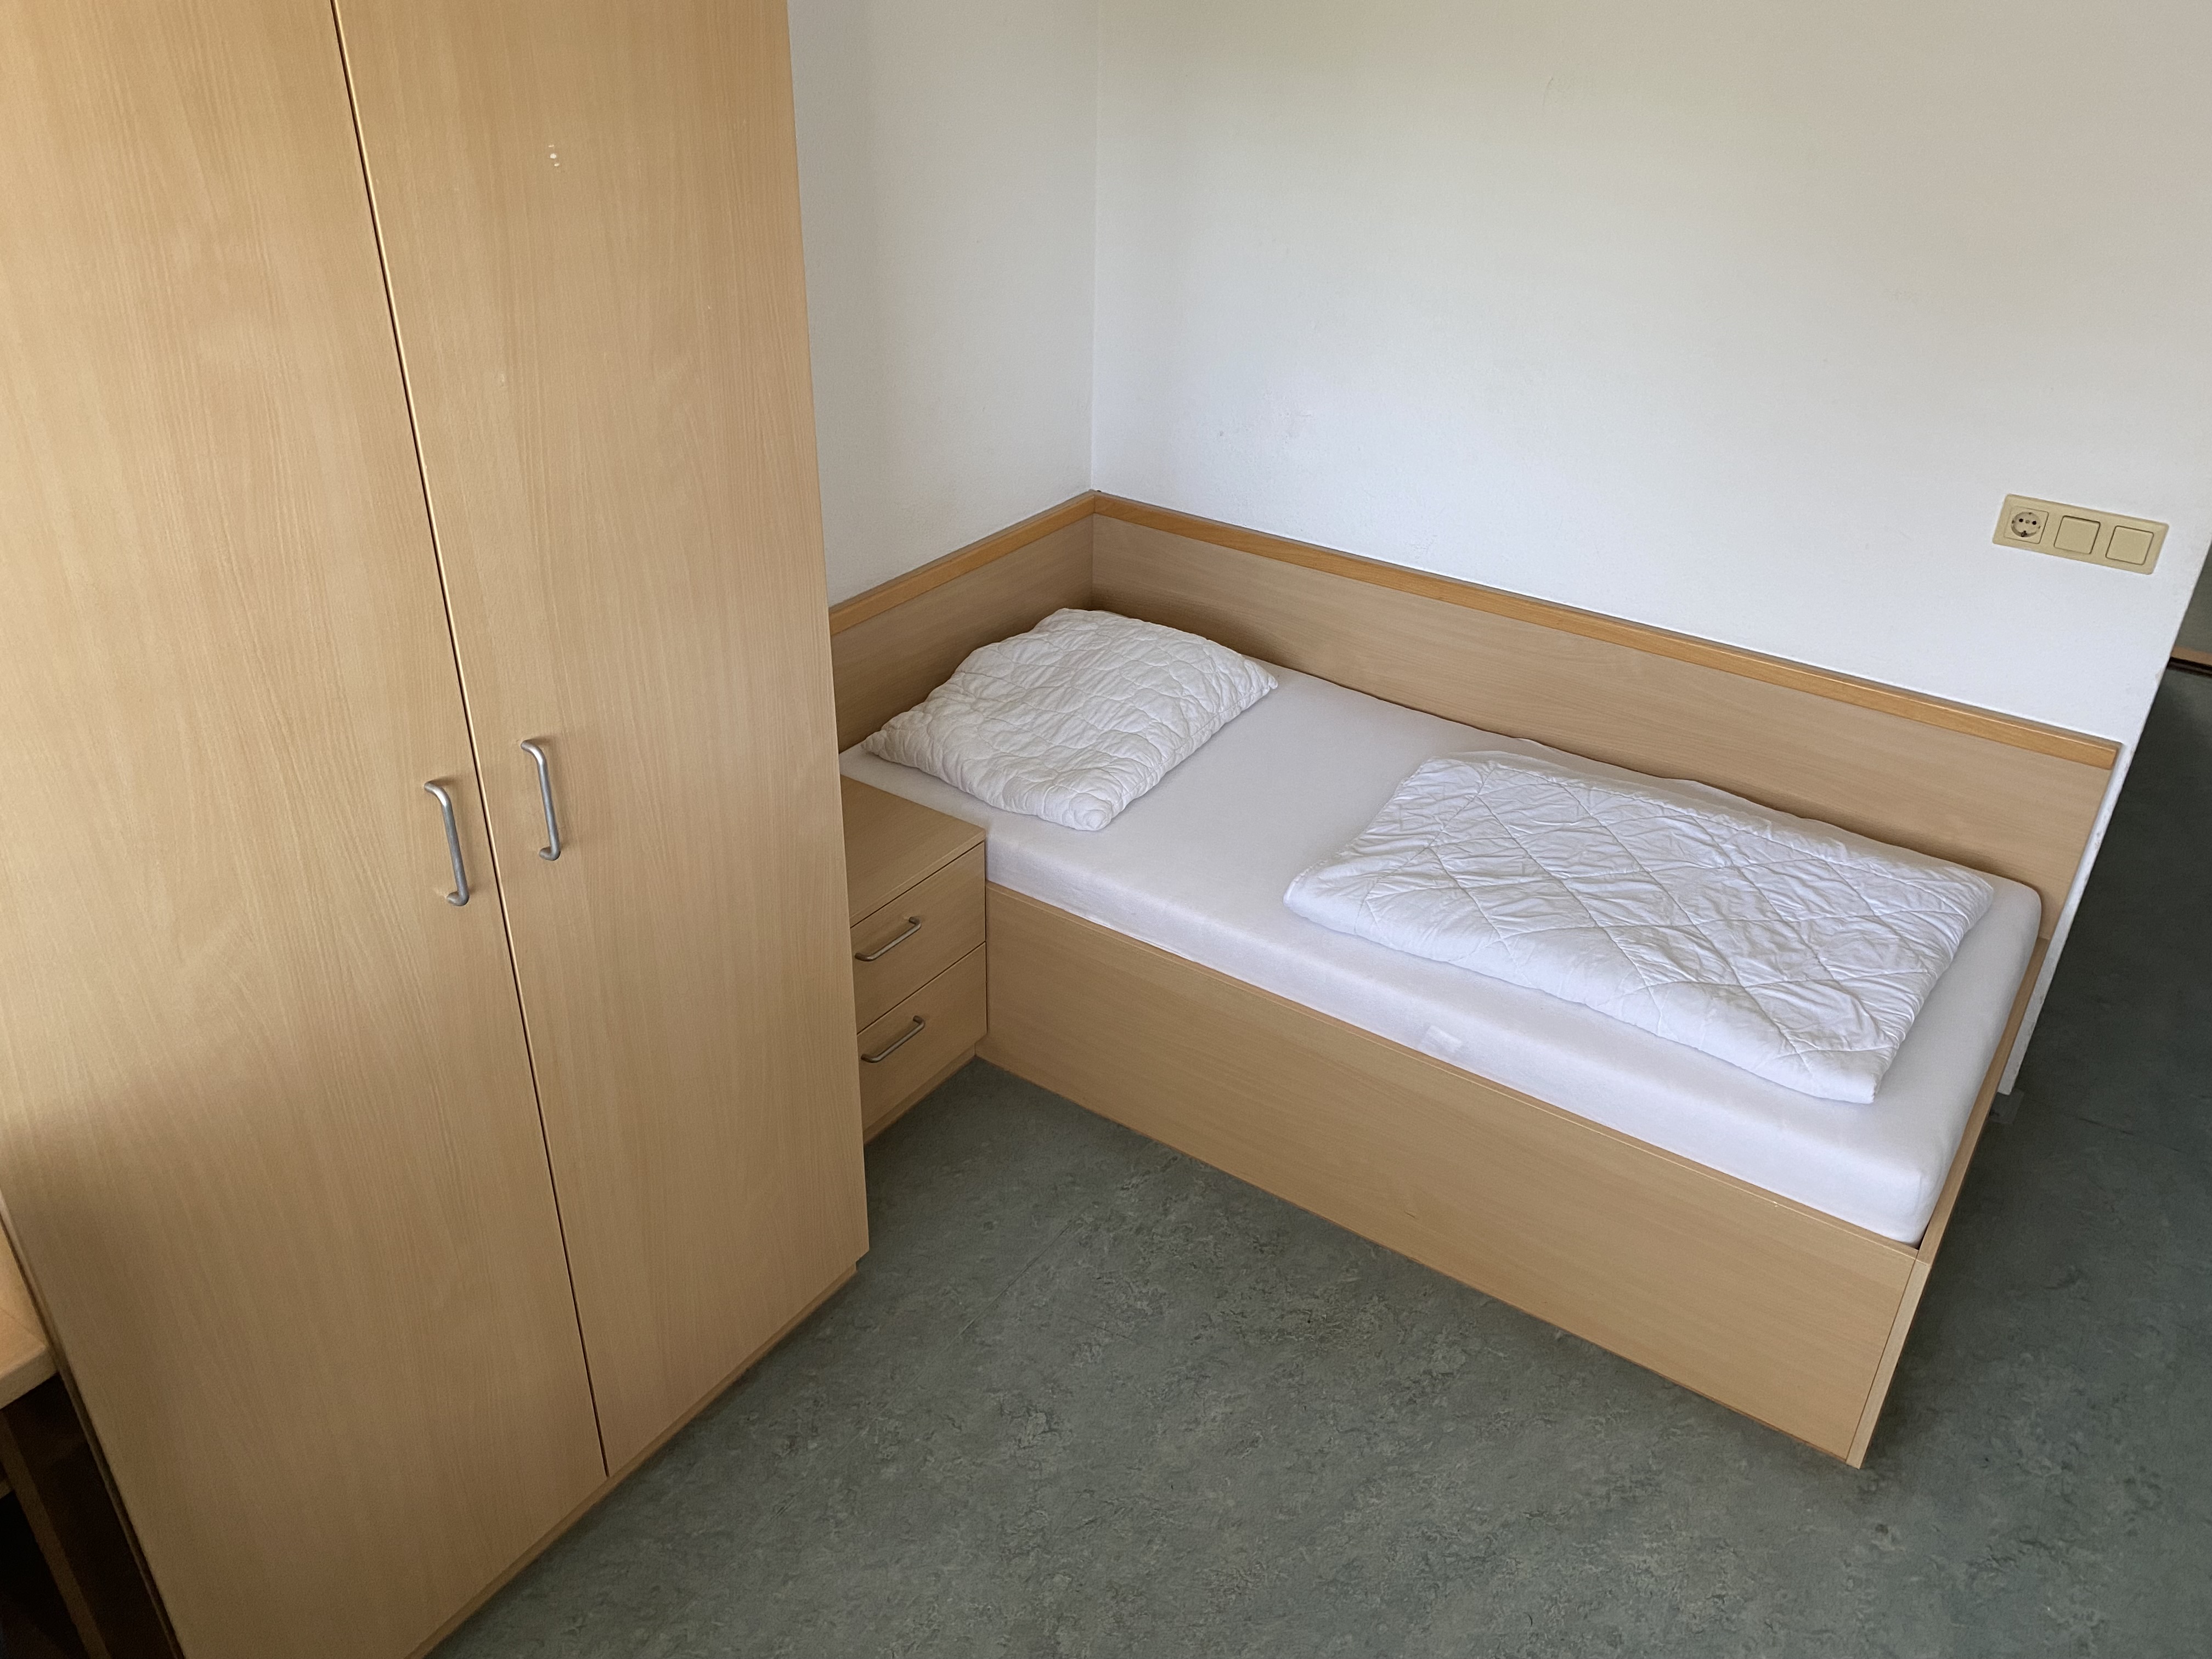 Einzelzimmer - Bett und Kasten